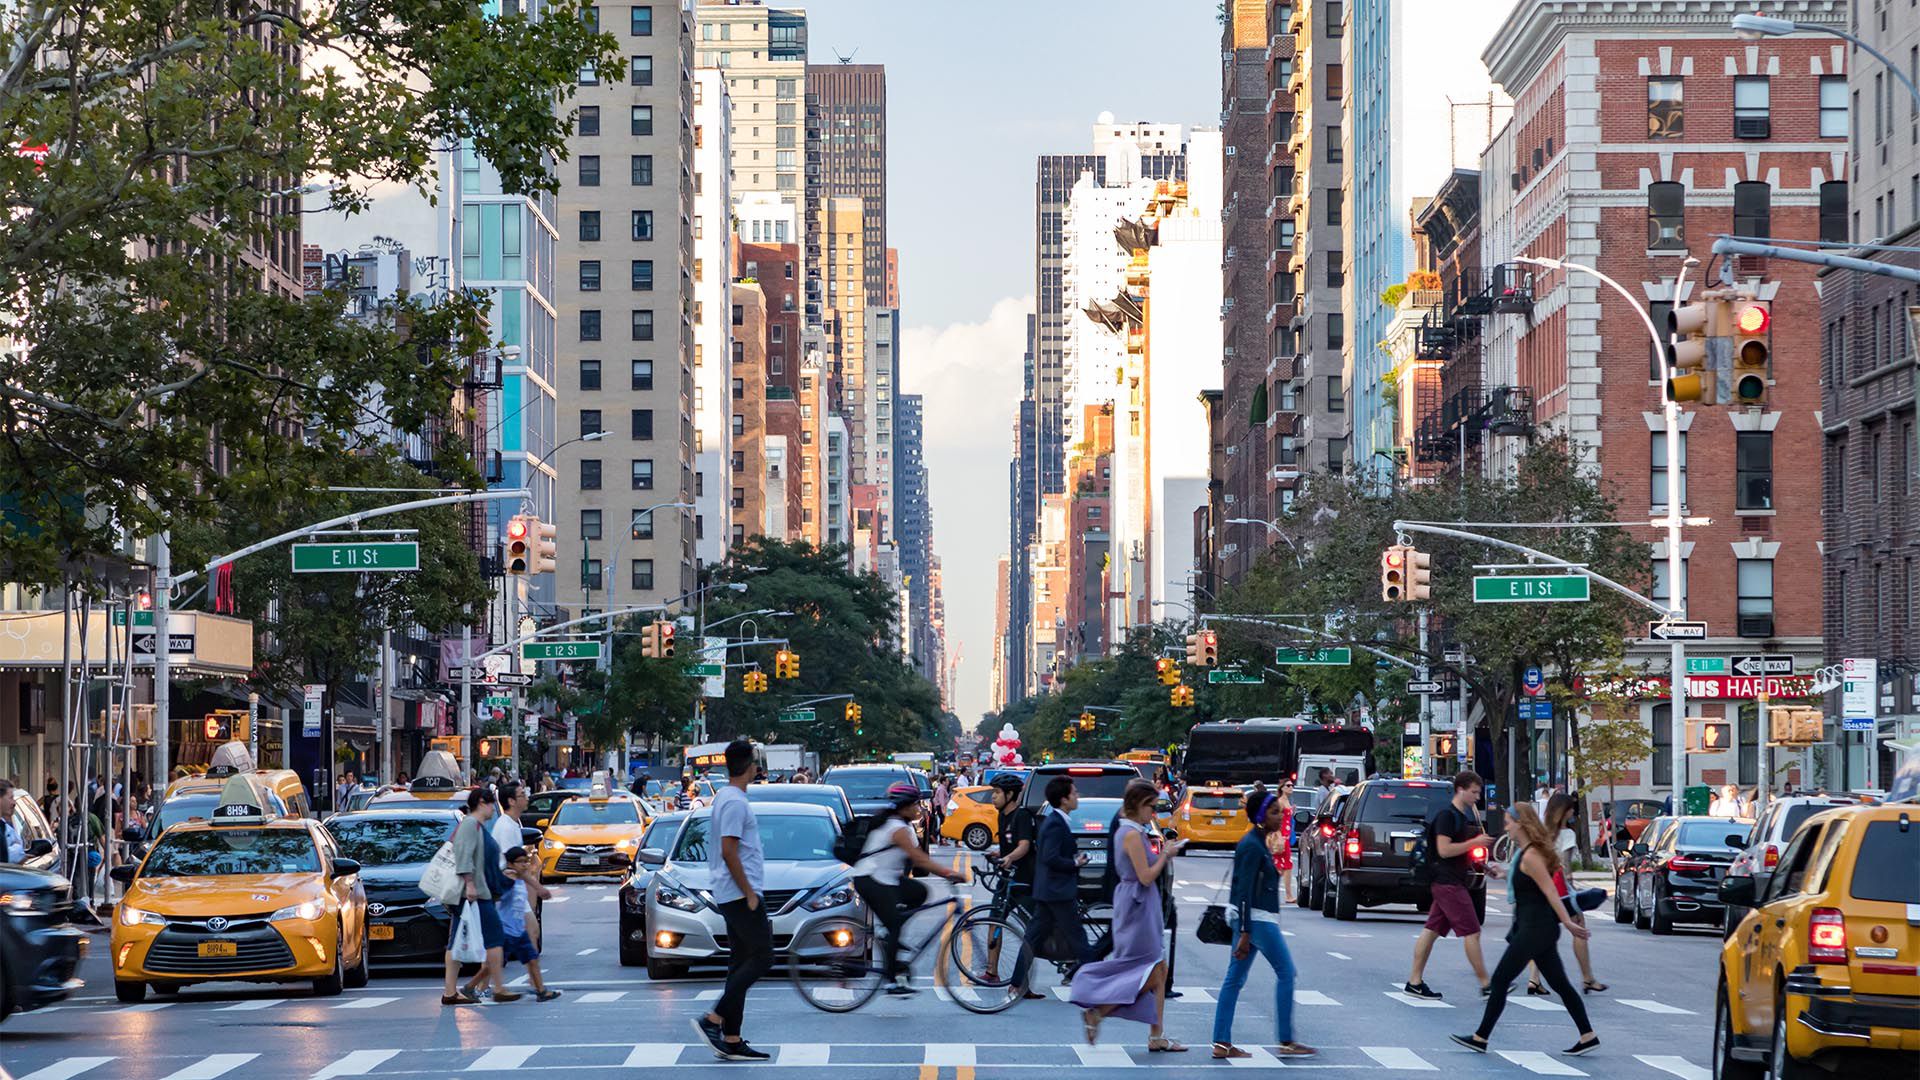 Nueva York es una de las grandes ciudades más seguras de Estados Unidos, con una tasa de criminalidad por habitante incluso más baja que el promedio nacional